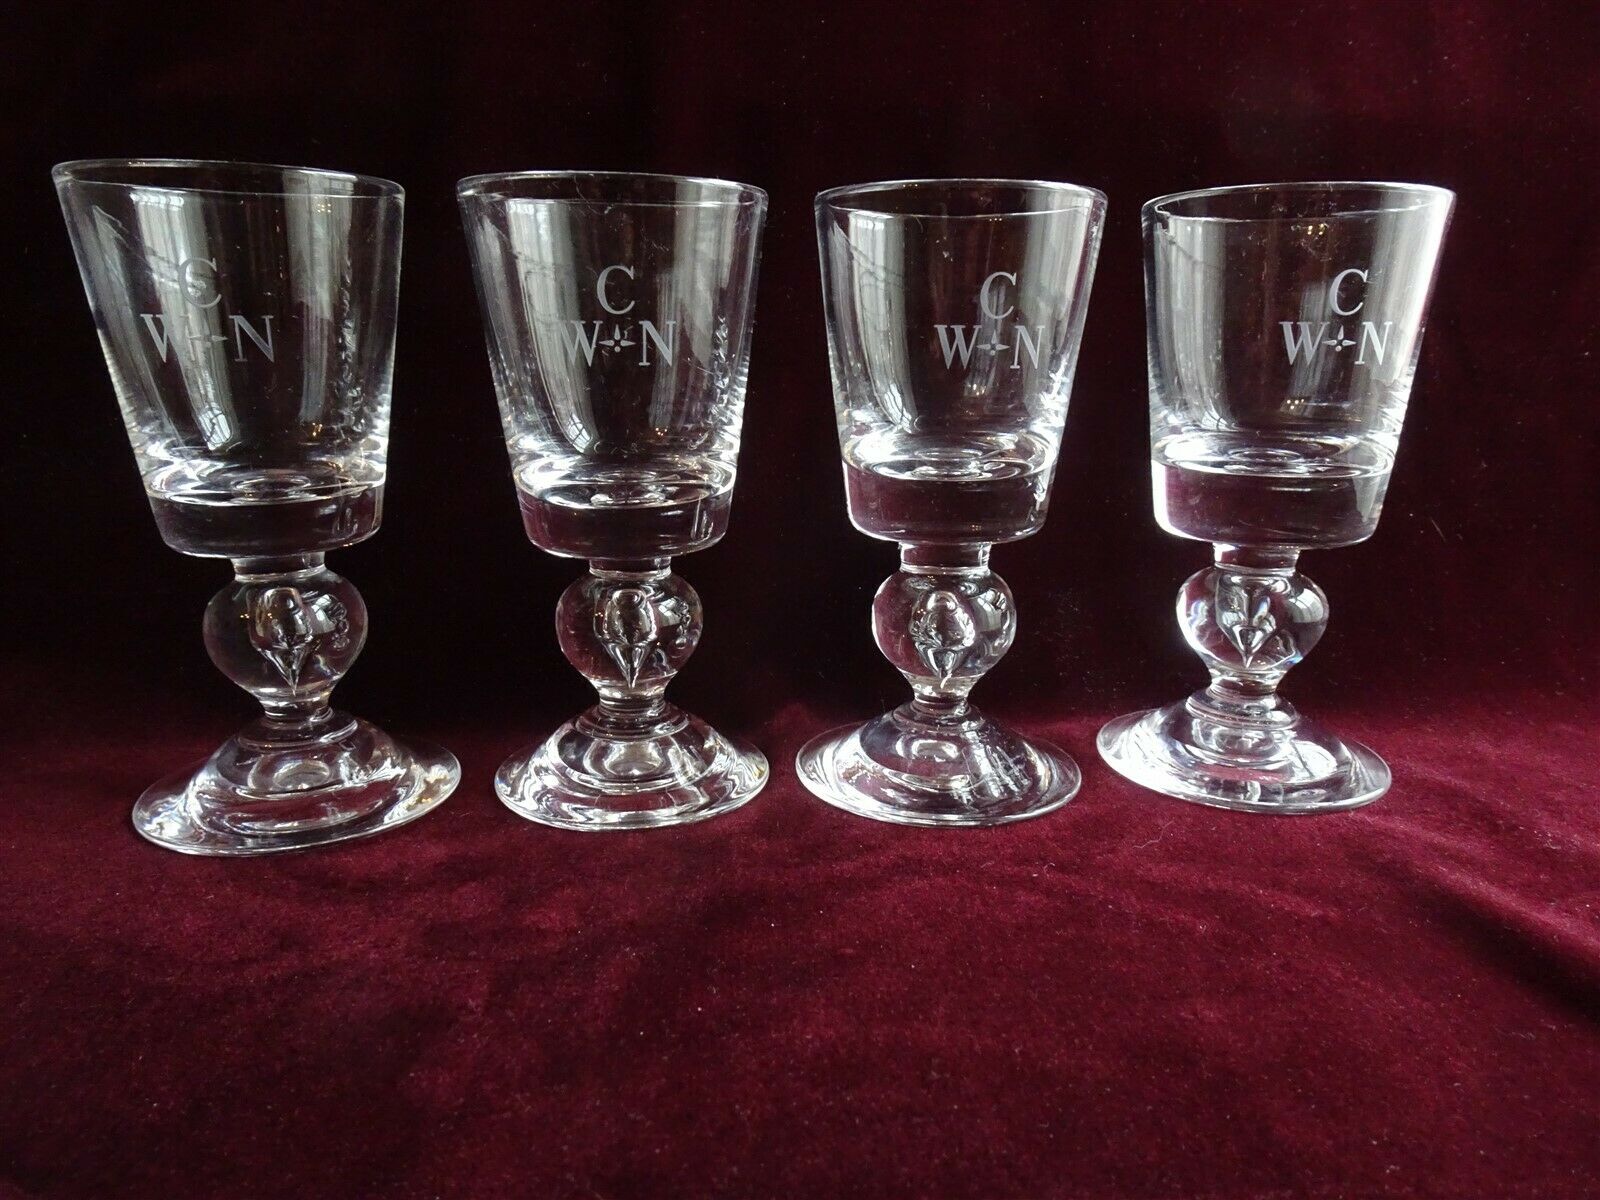 4 Steuben Crystal Baluster Teardrop Stem Port Wine Glasses, Pattern 7926, Signed